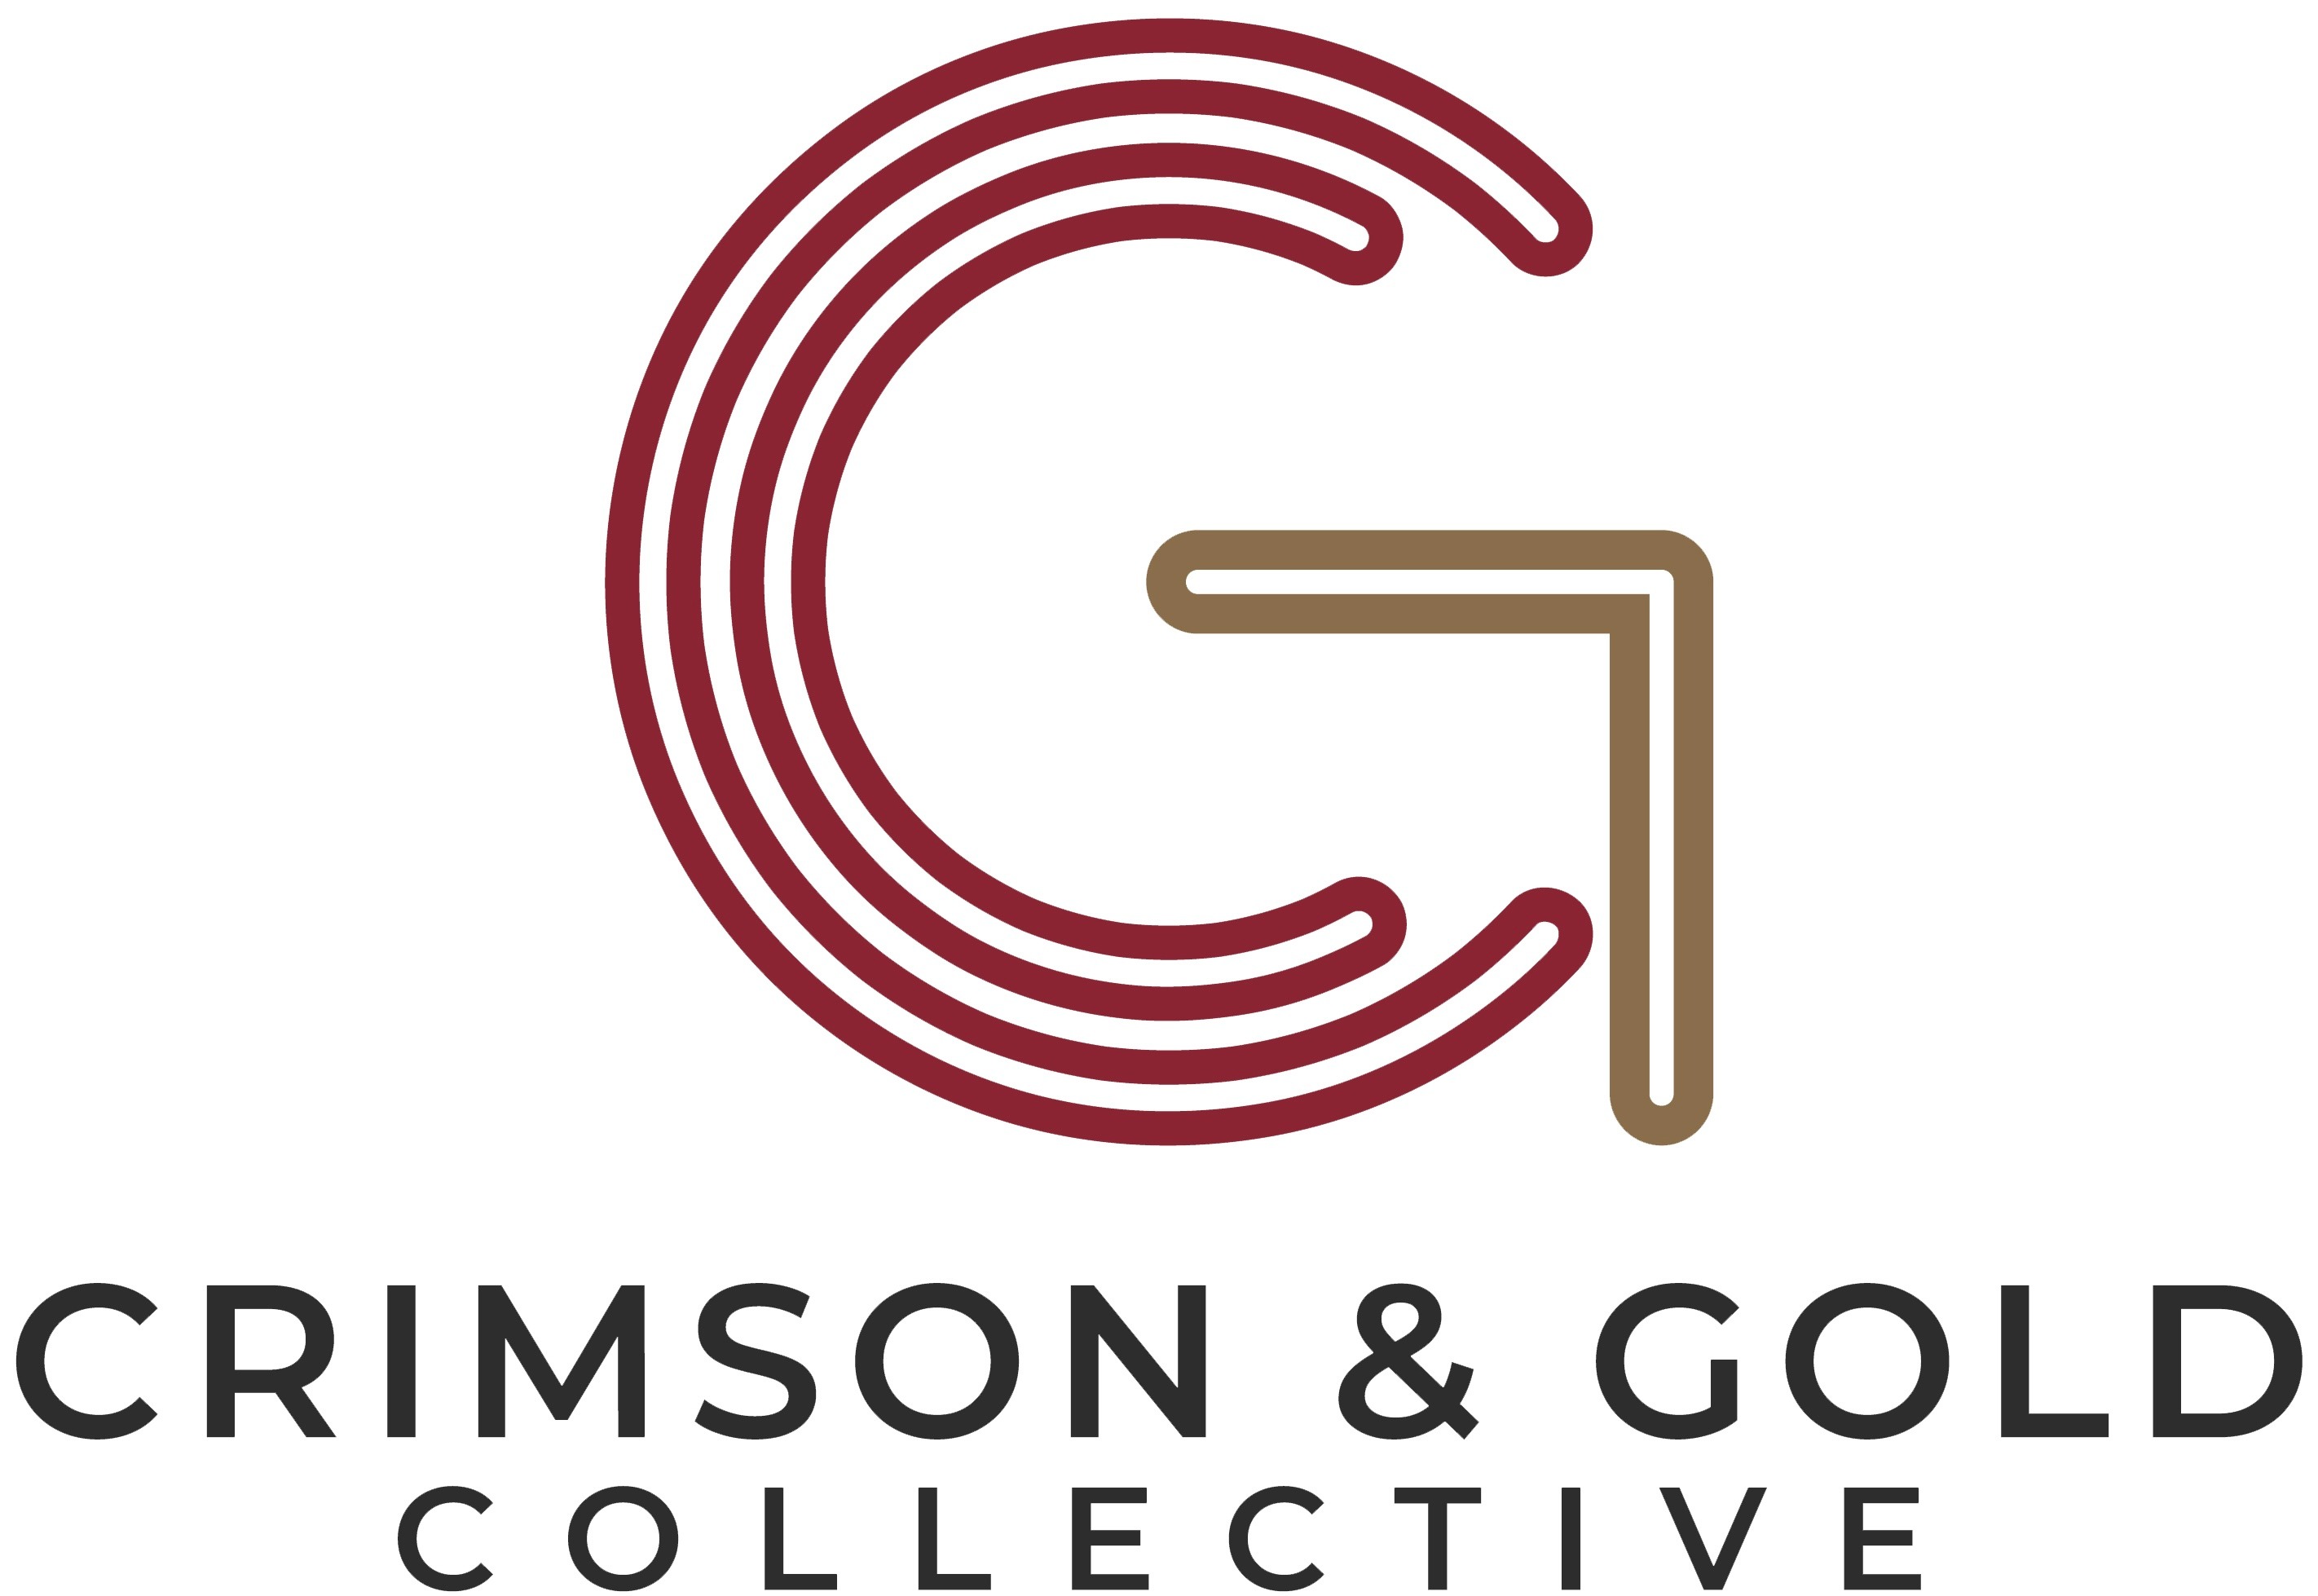 Crimson & Gold Collective logo